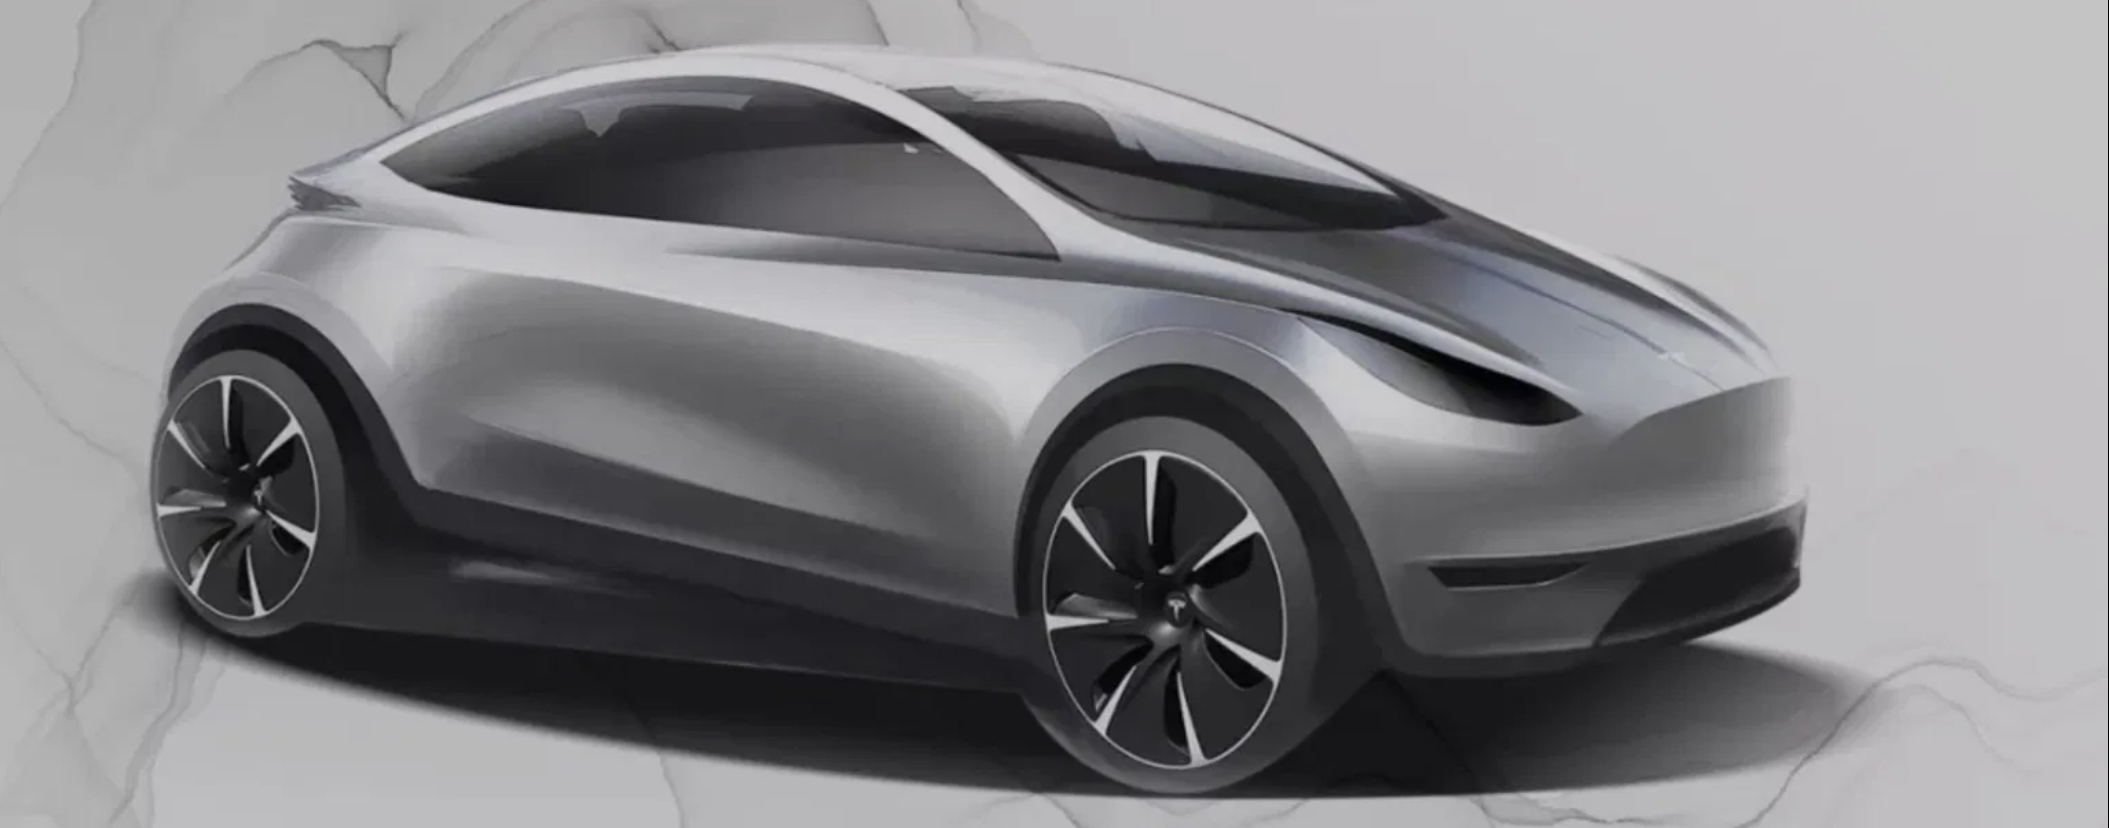 Tesla elektromobil za 20 000 eur (Zdroj: Tesla)